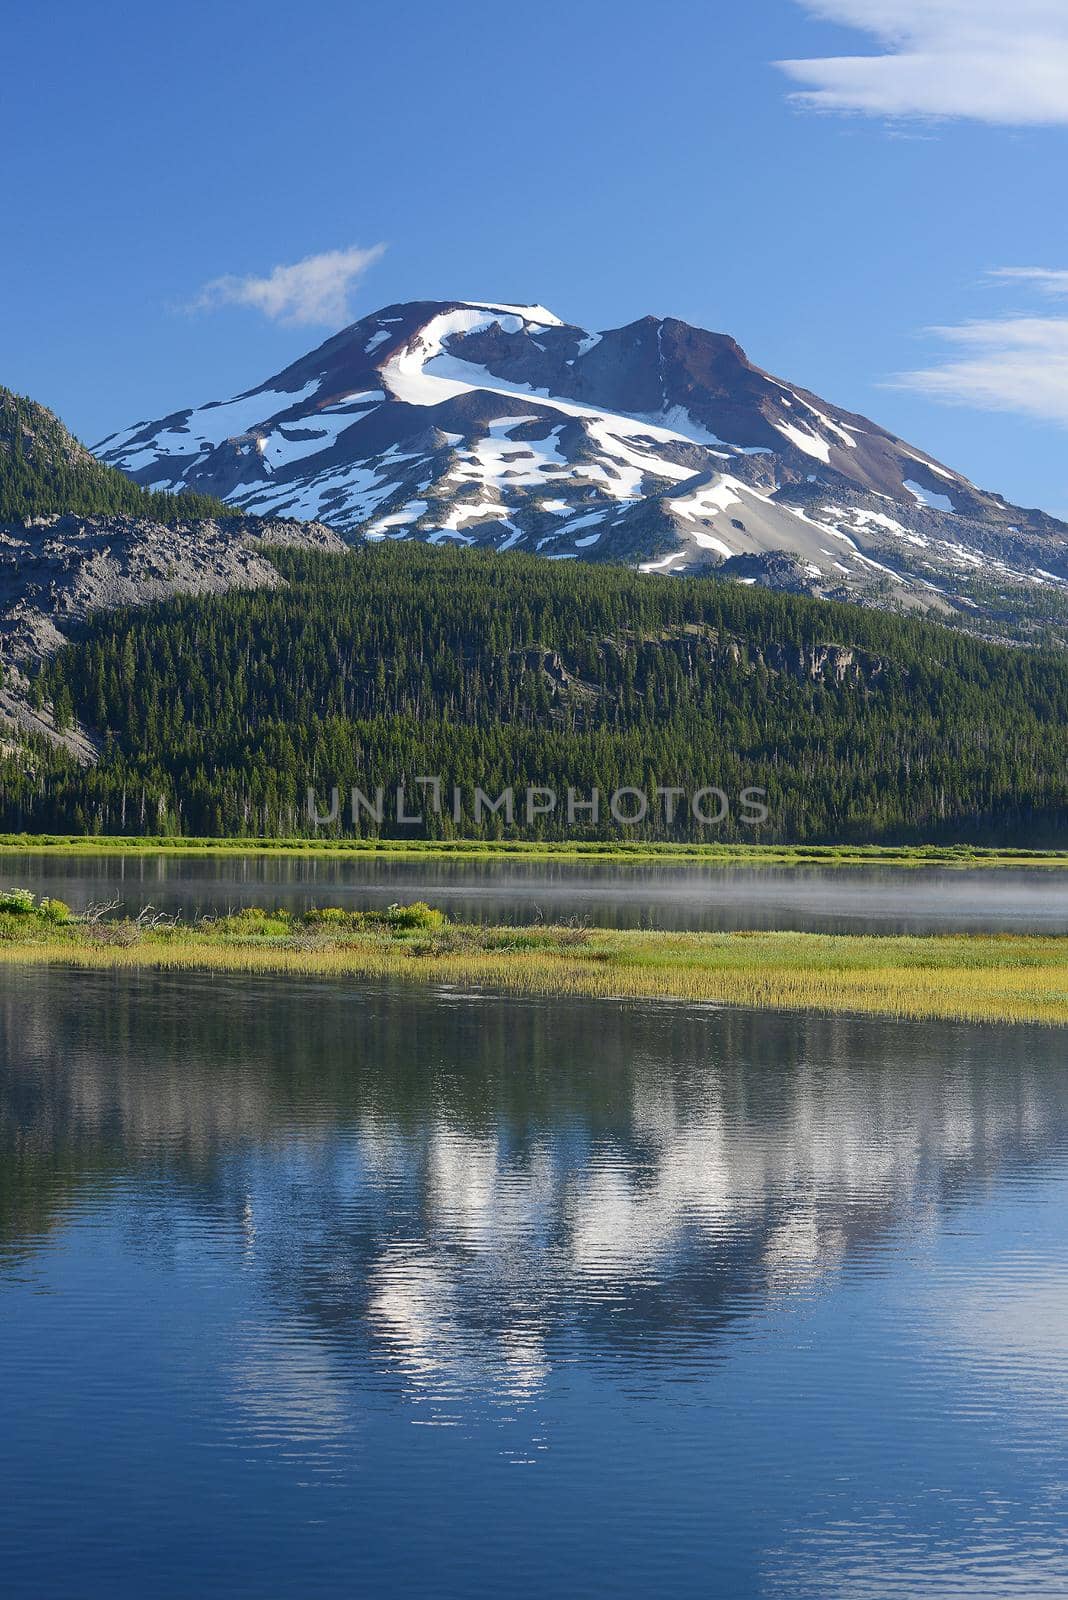 Oregon Mountain by porbital